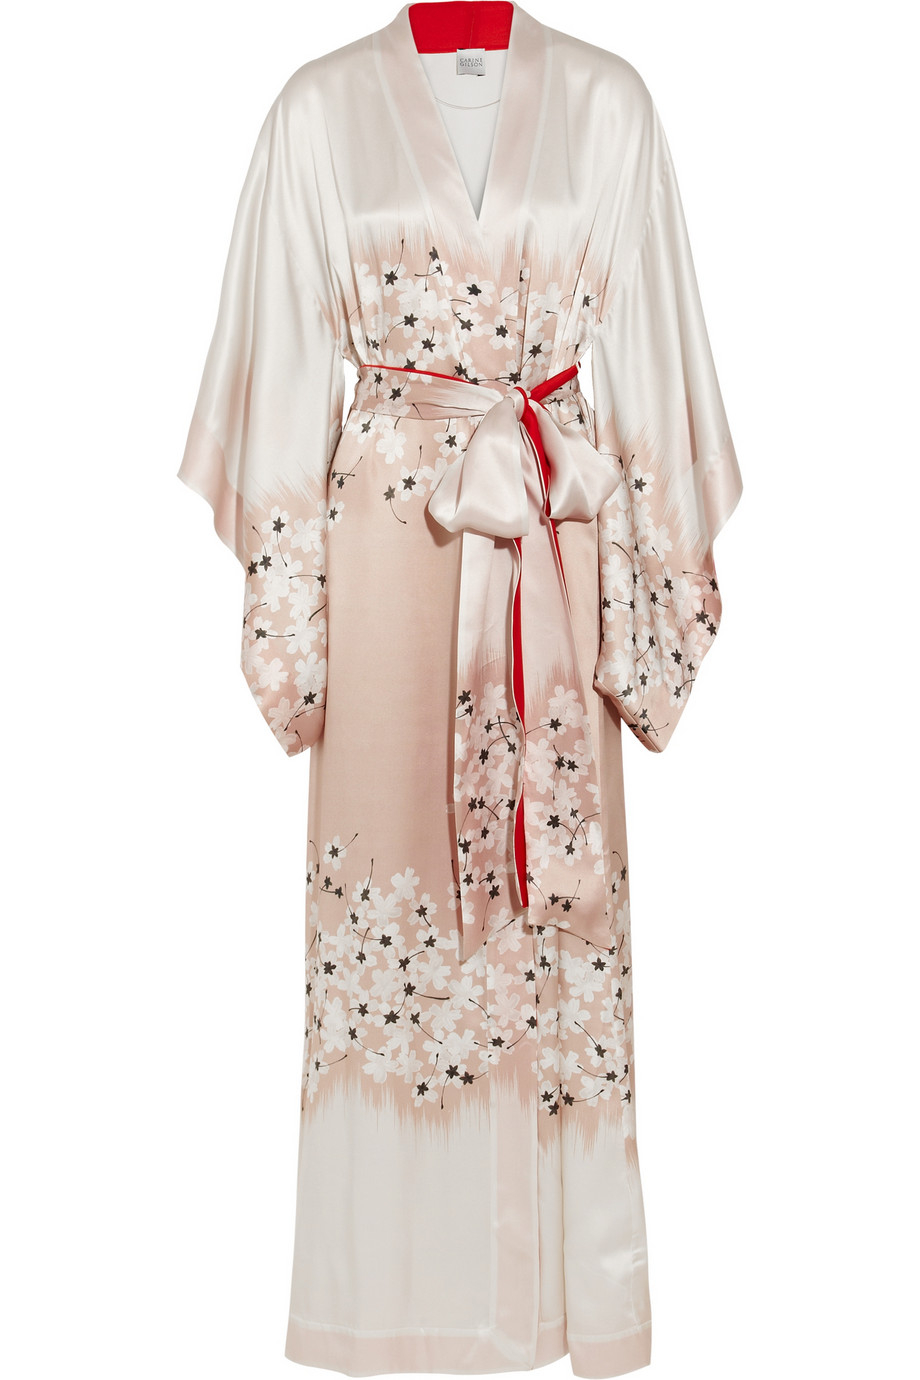 Carine Gilson Sakura Floral-print Silk-satin Kimono Robe in White ...